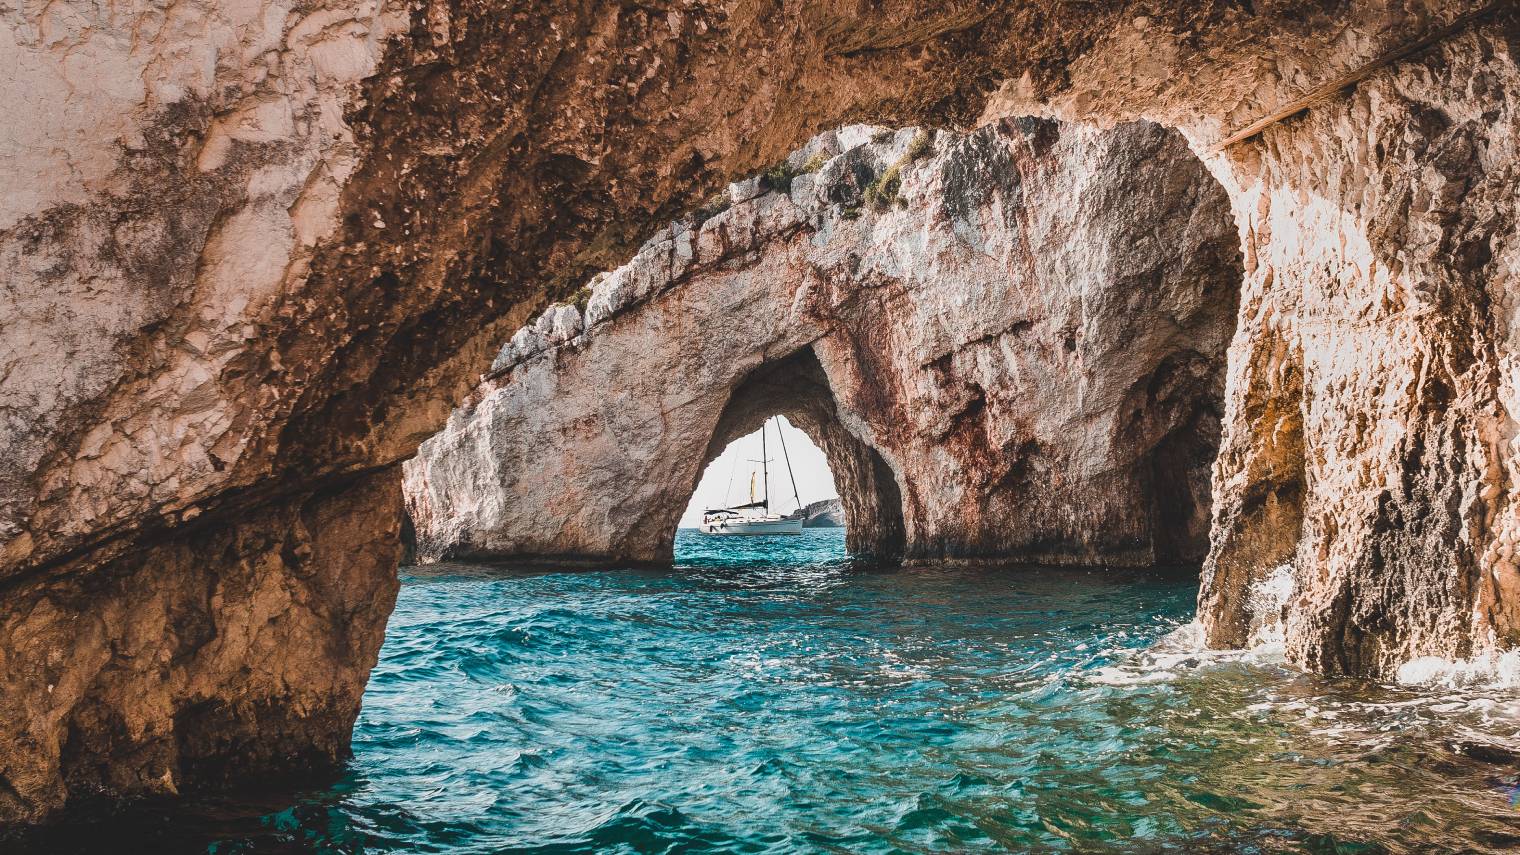 Ζάκυνθος: Οι περίφημες Γαλάζιες Σπηλιές περιμένουν να τις ανακαλύψετε